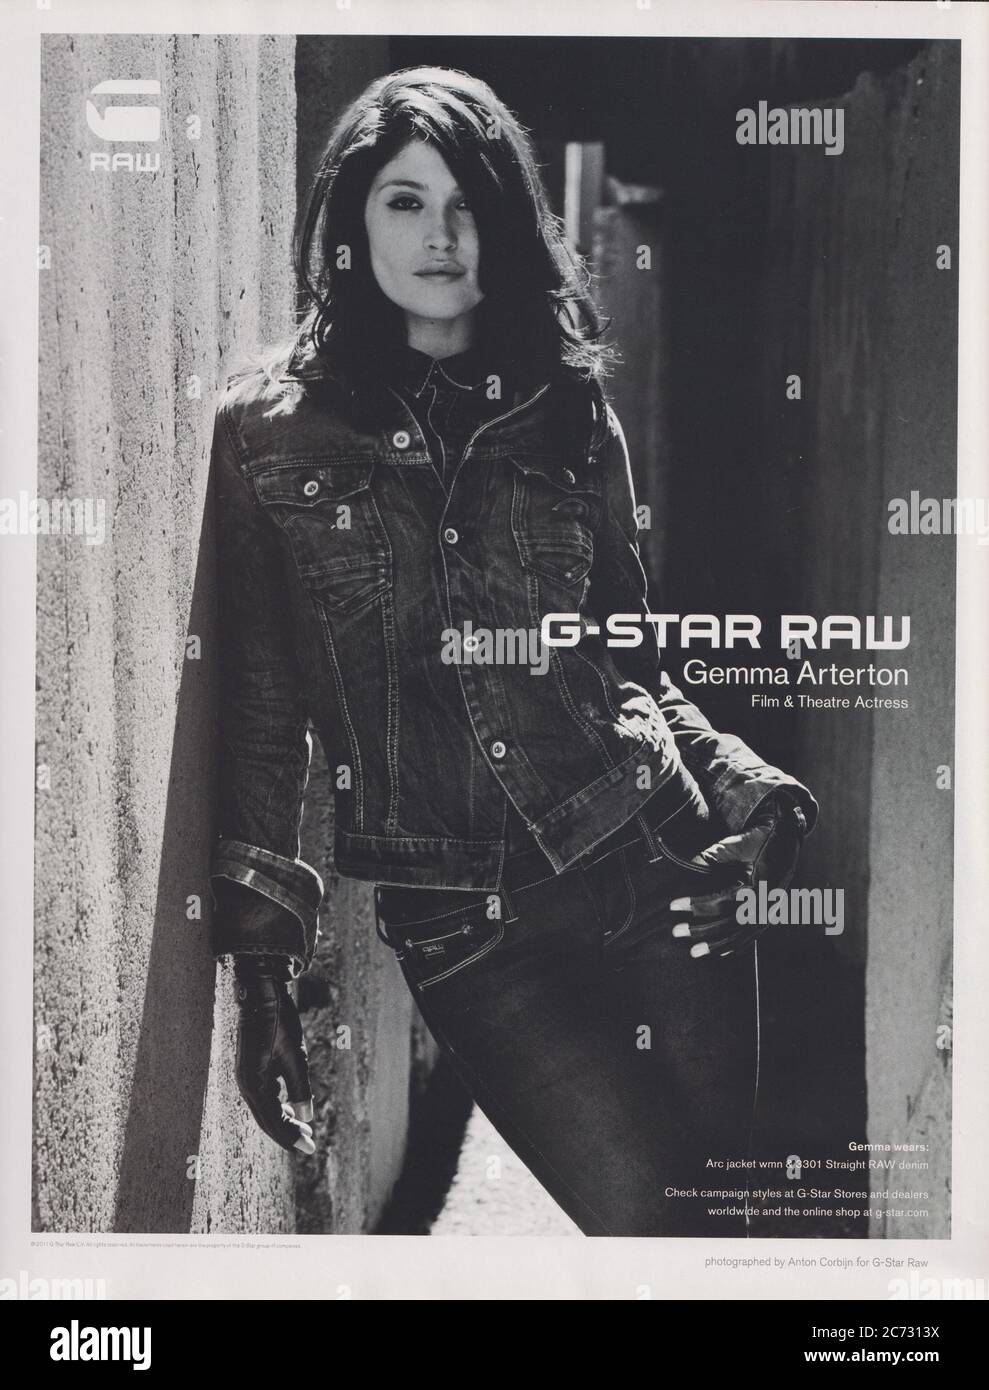 Plakat für G-Star RAW Modehaus mit Gemma Arterton im Papiermagazin ab 2011  Jahren, Werbung, kreative G-Star Werbung aus den 2010er Jahren  Stockfotografie - Alamy